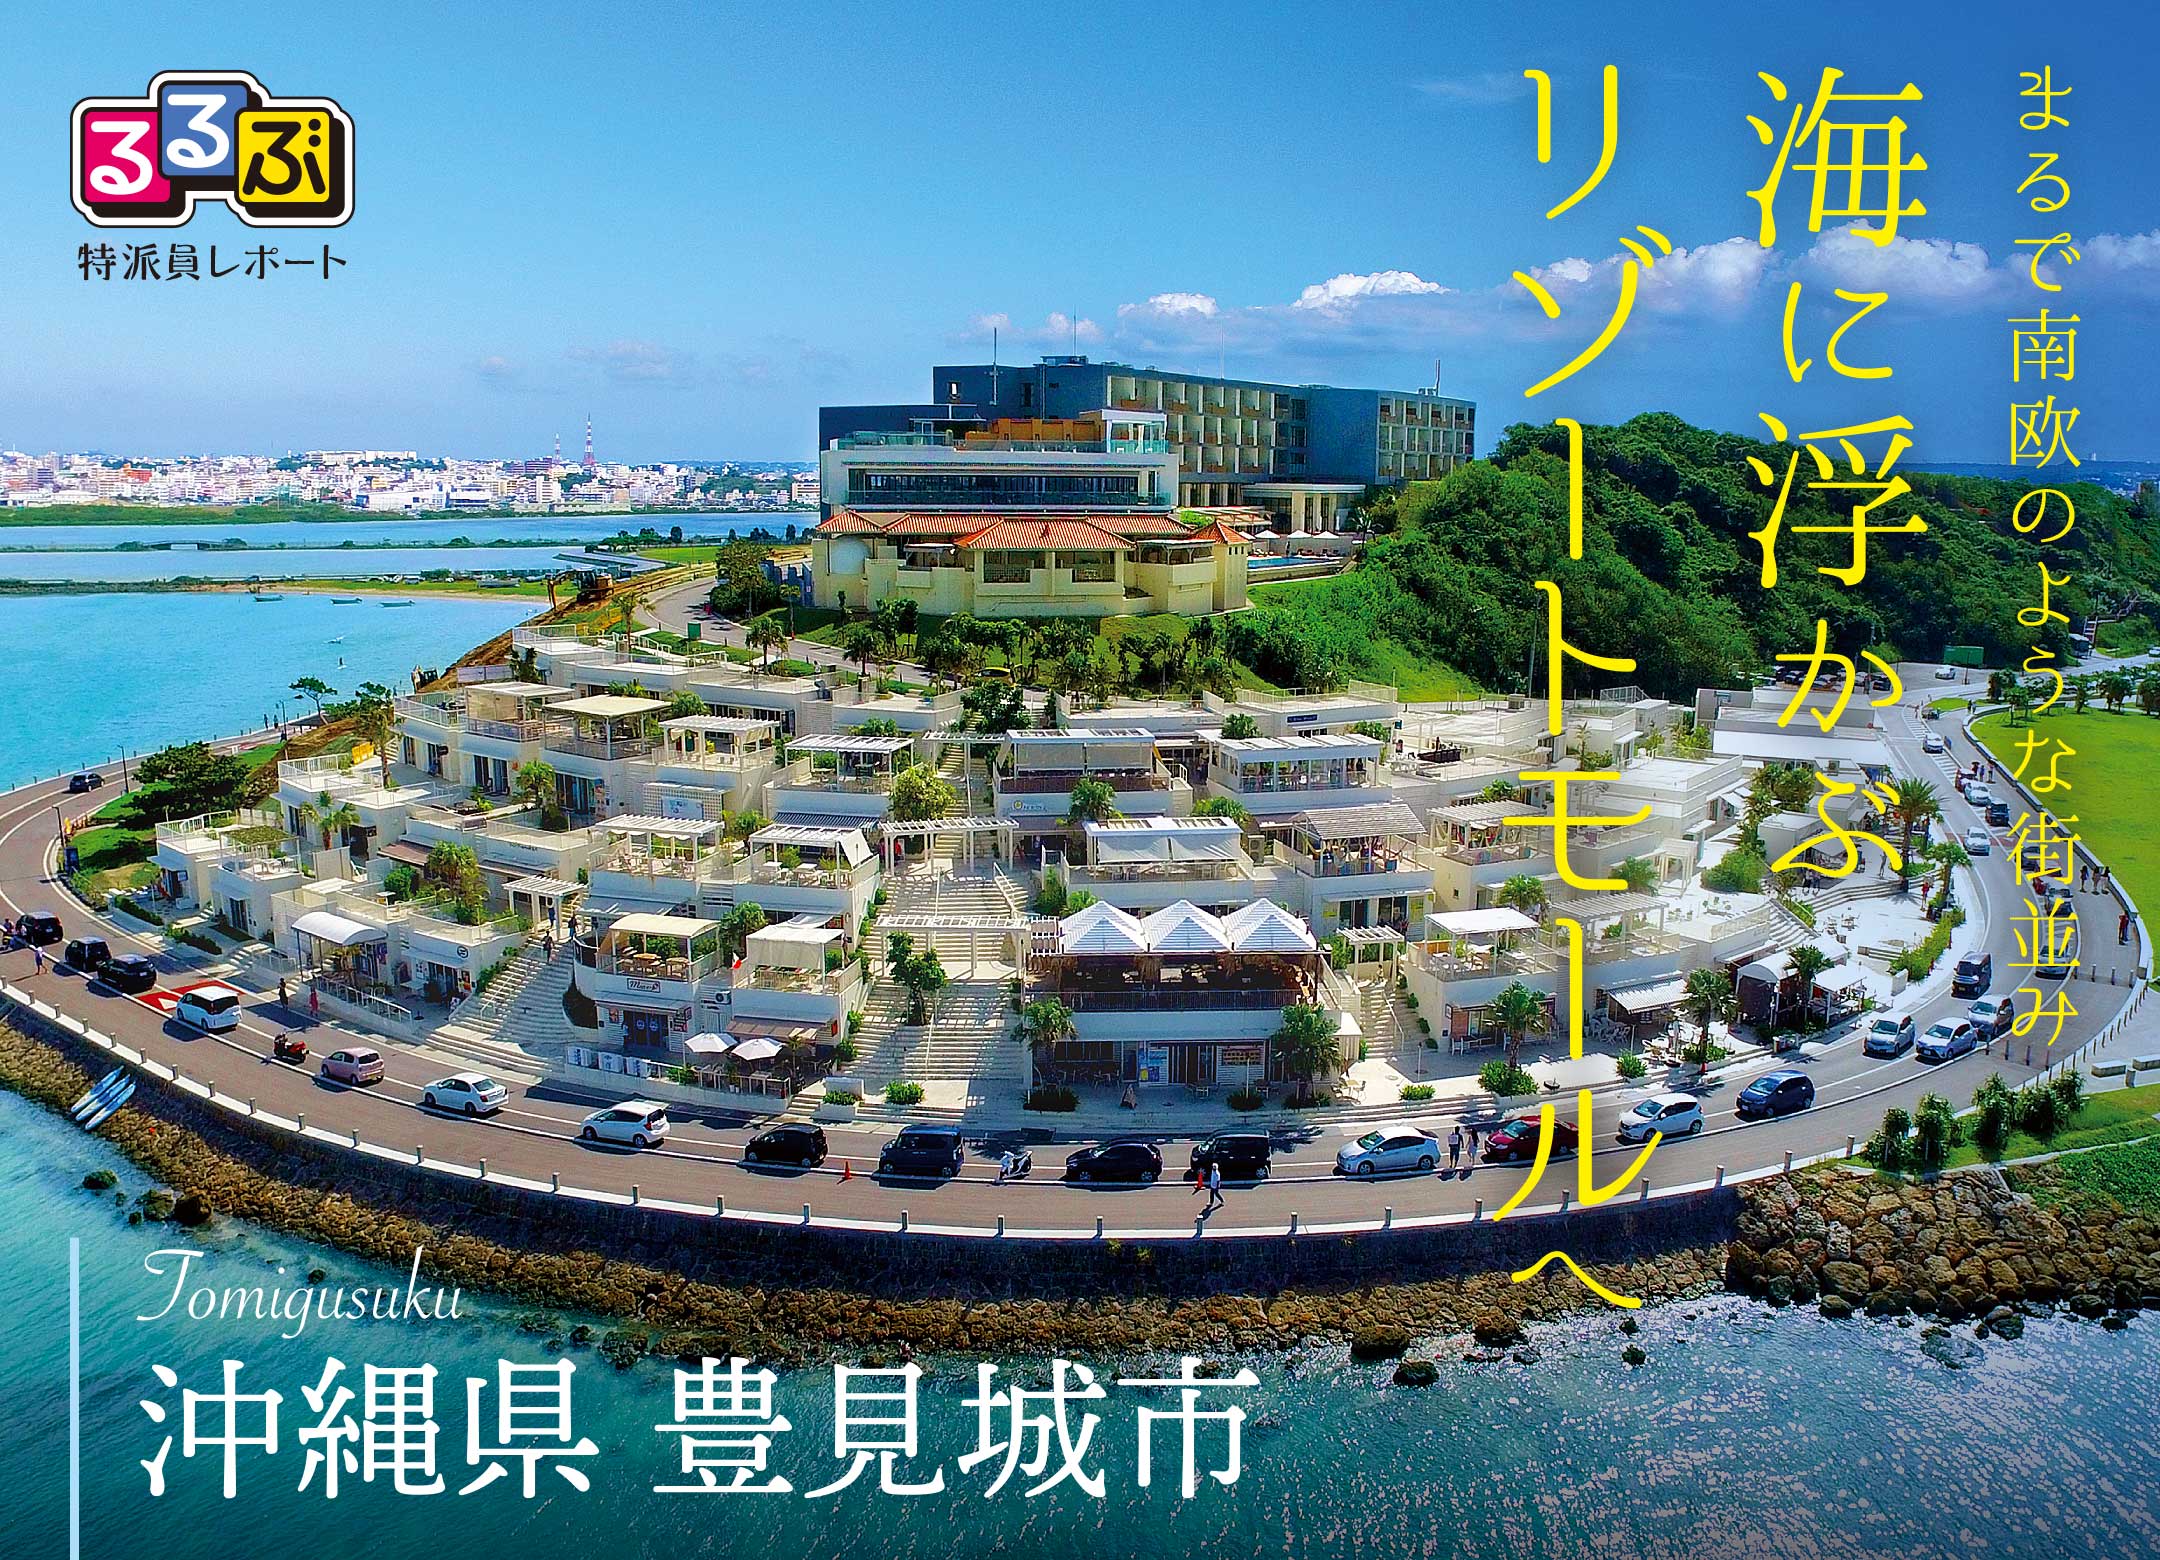  おんなの駅  なかゆくい市場へ | 沖縄県豊見城市 の旅行レポート